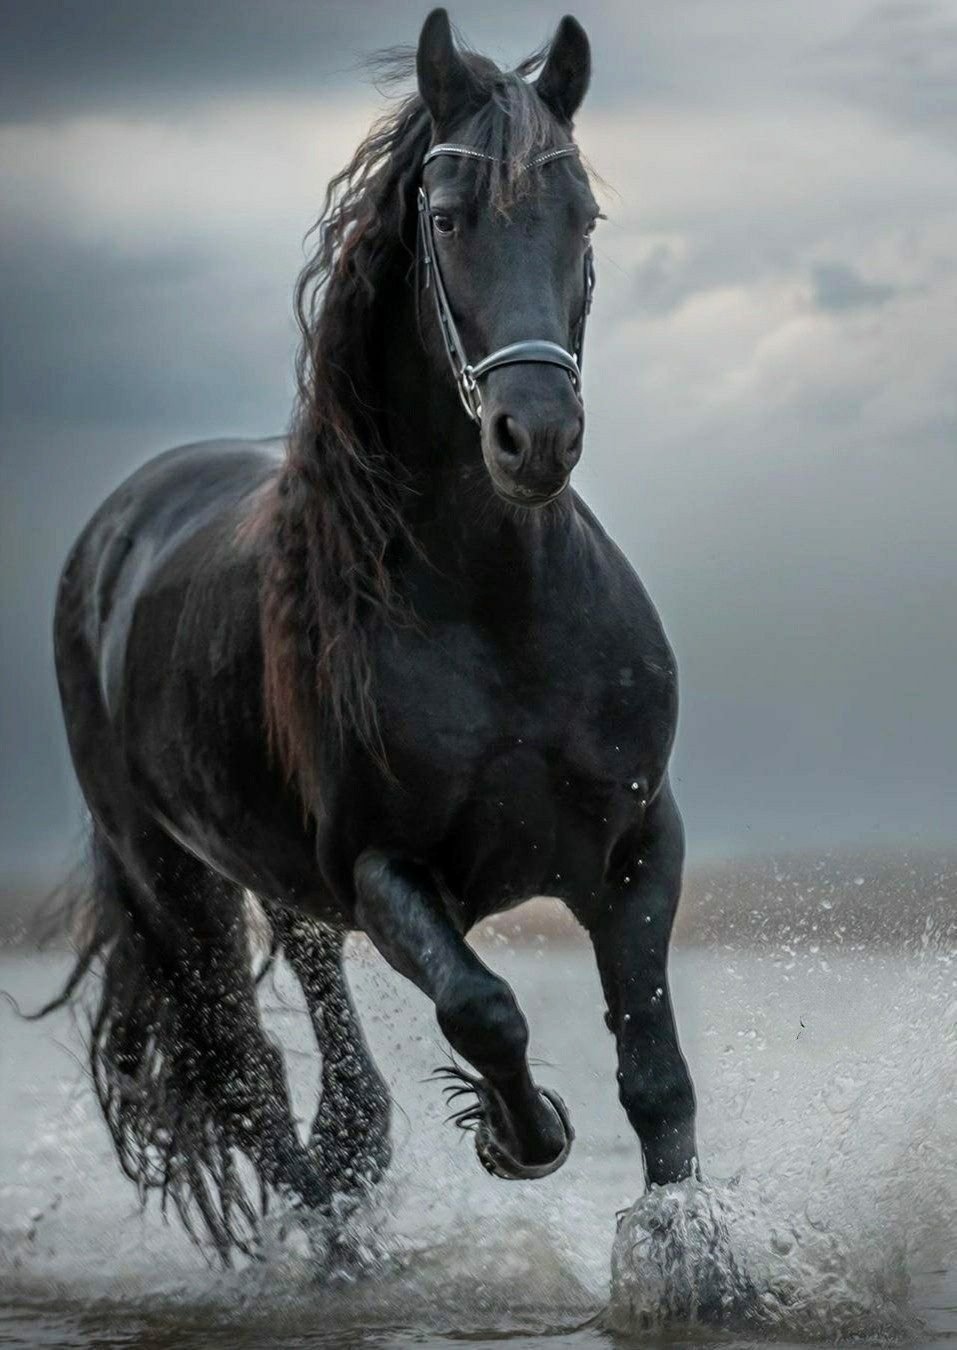 Черный конь